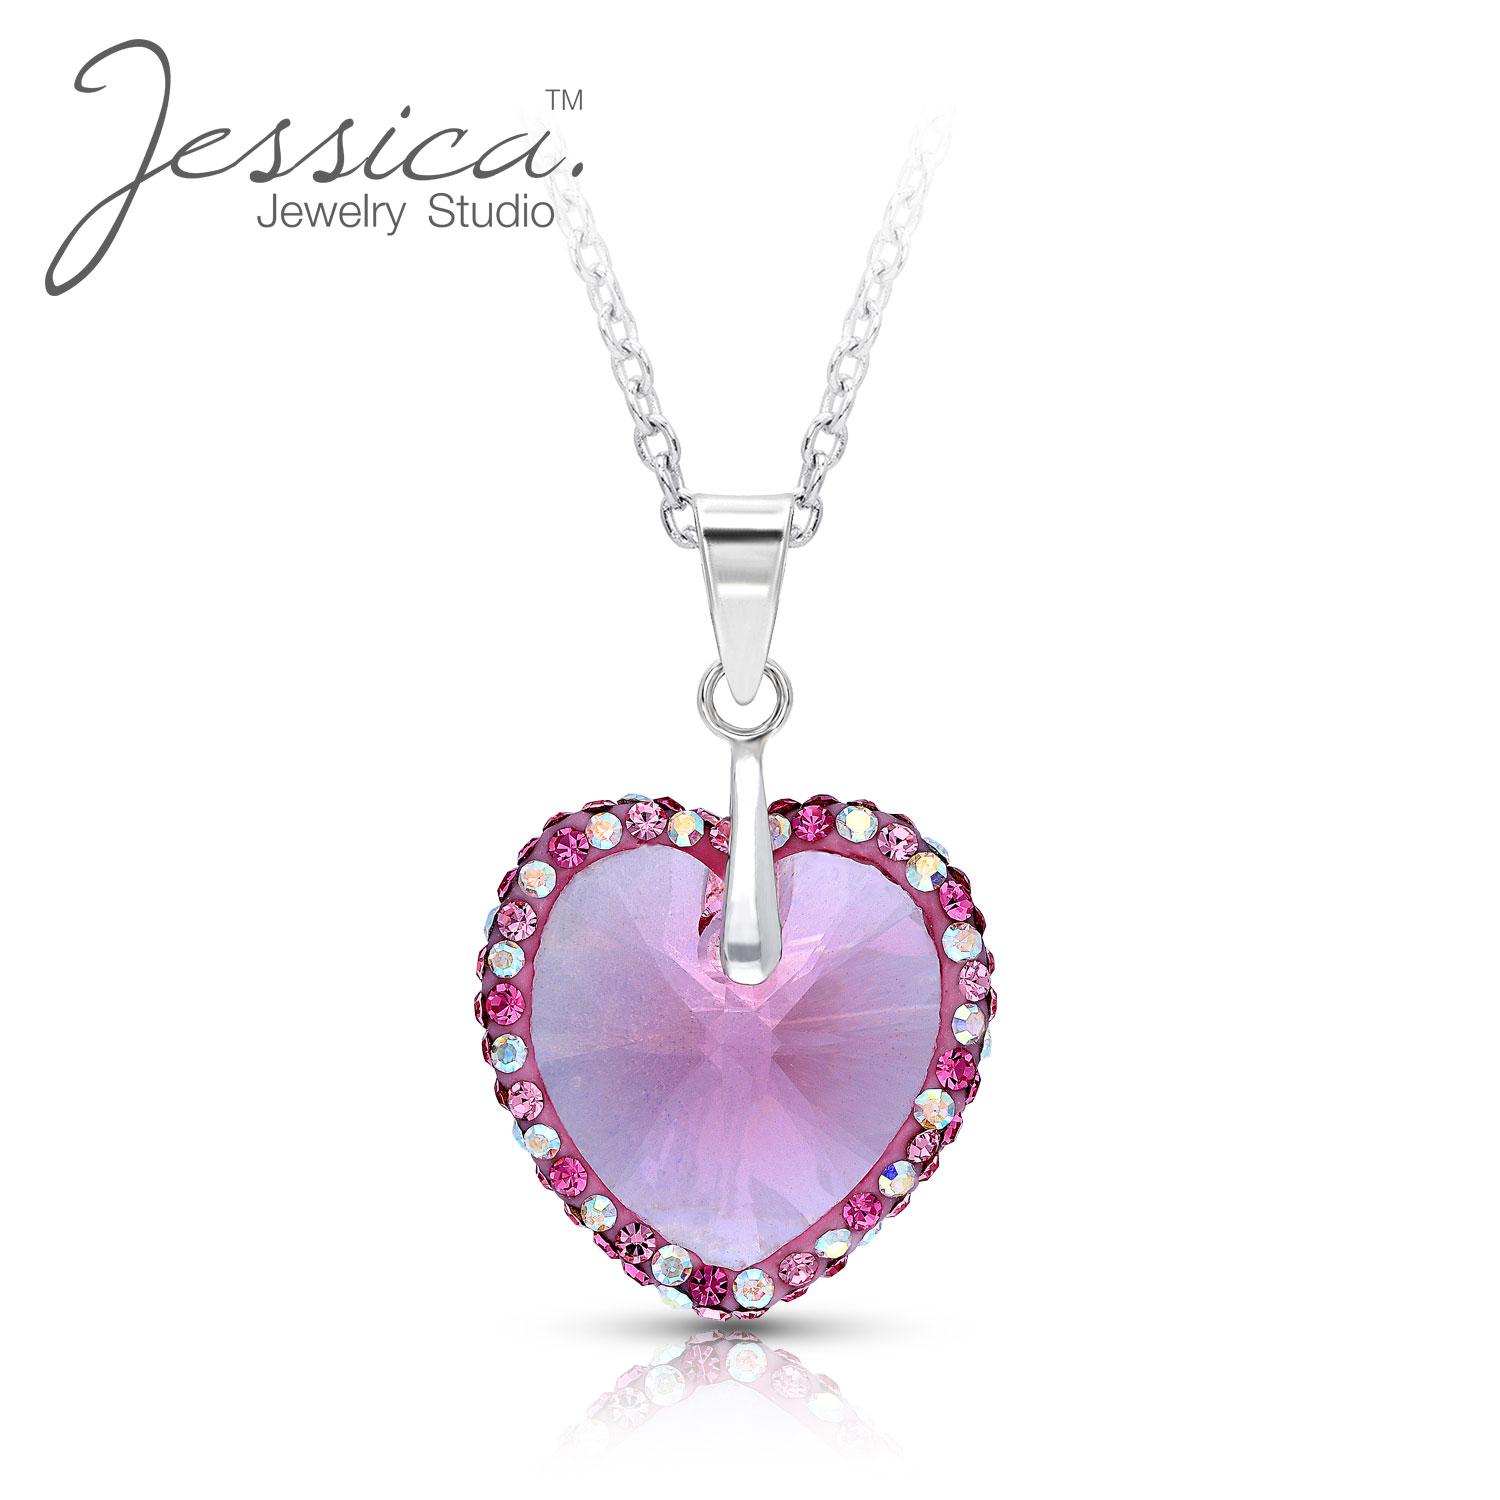 jessica jewelry studio collier avec pendentif en cristal autrichien rose en argent sterling pur 925, cadeaux pour femmes donna